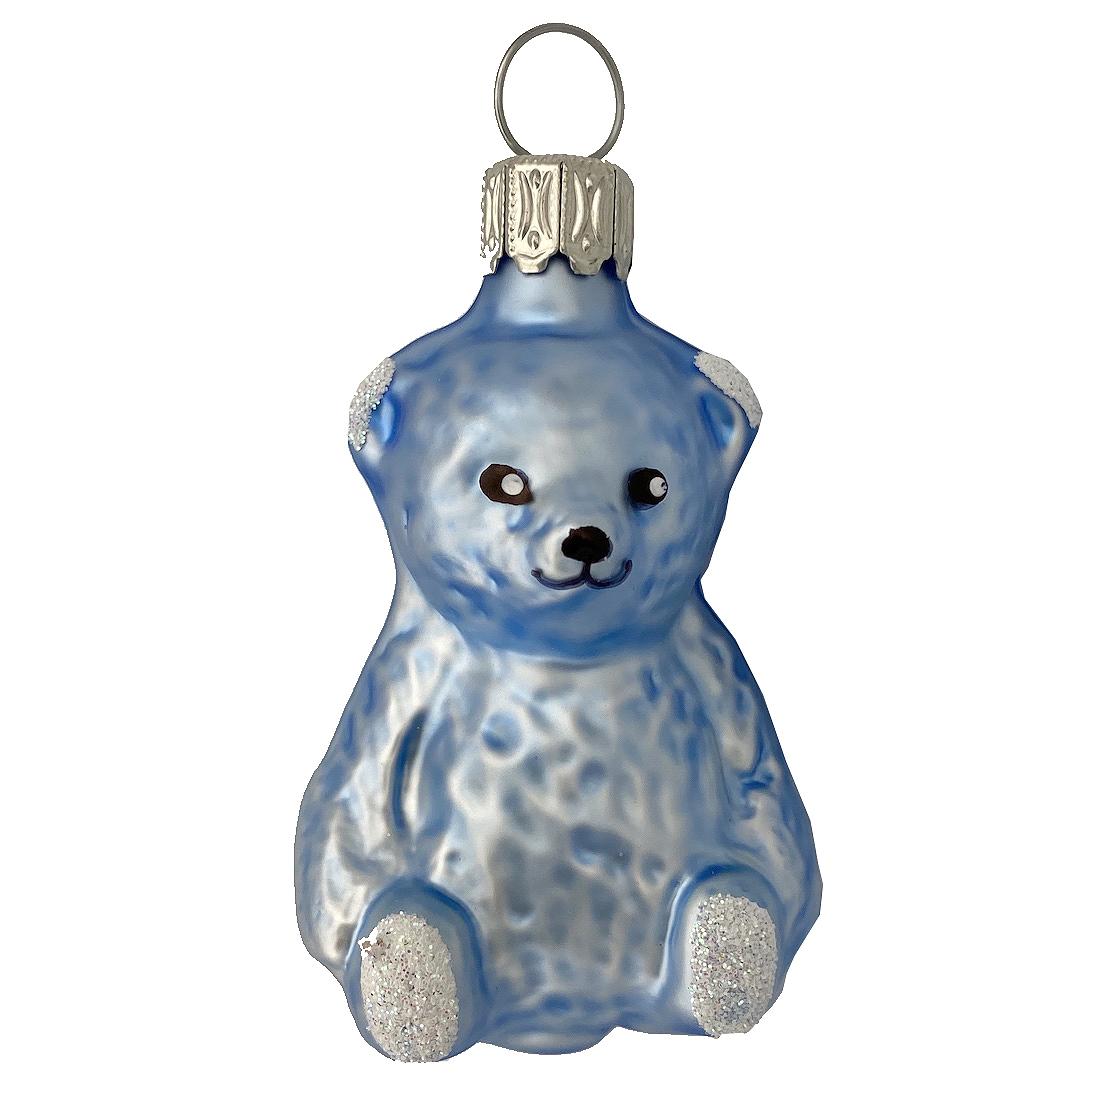 Baby's Teddy Bear, Blue Ornament by Glas Bartholmes